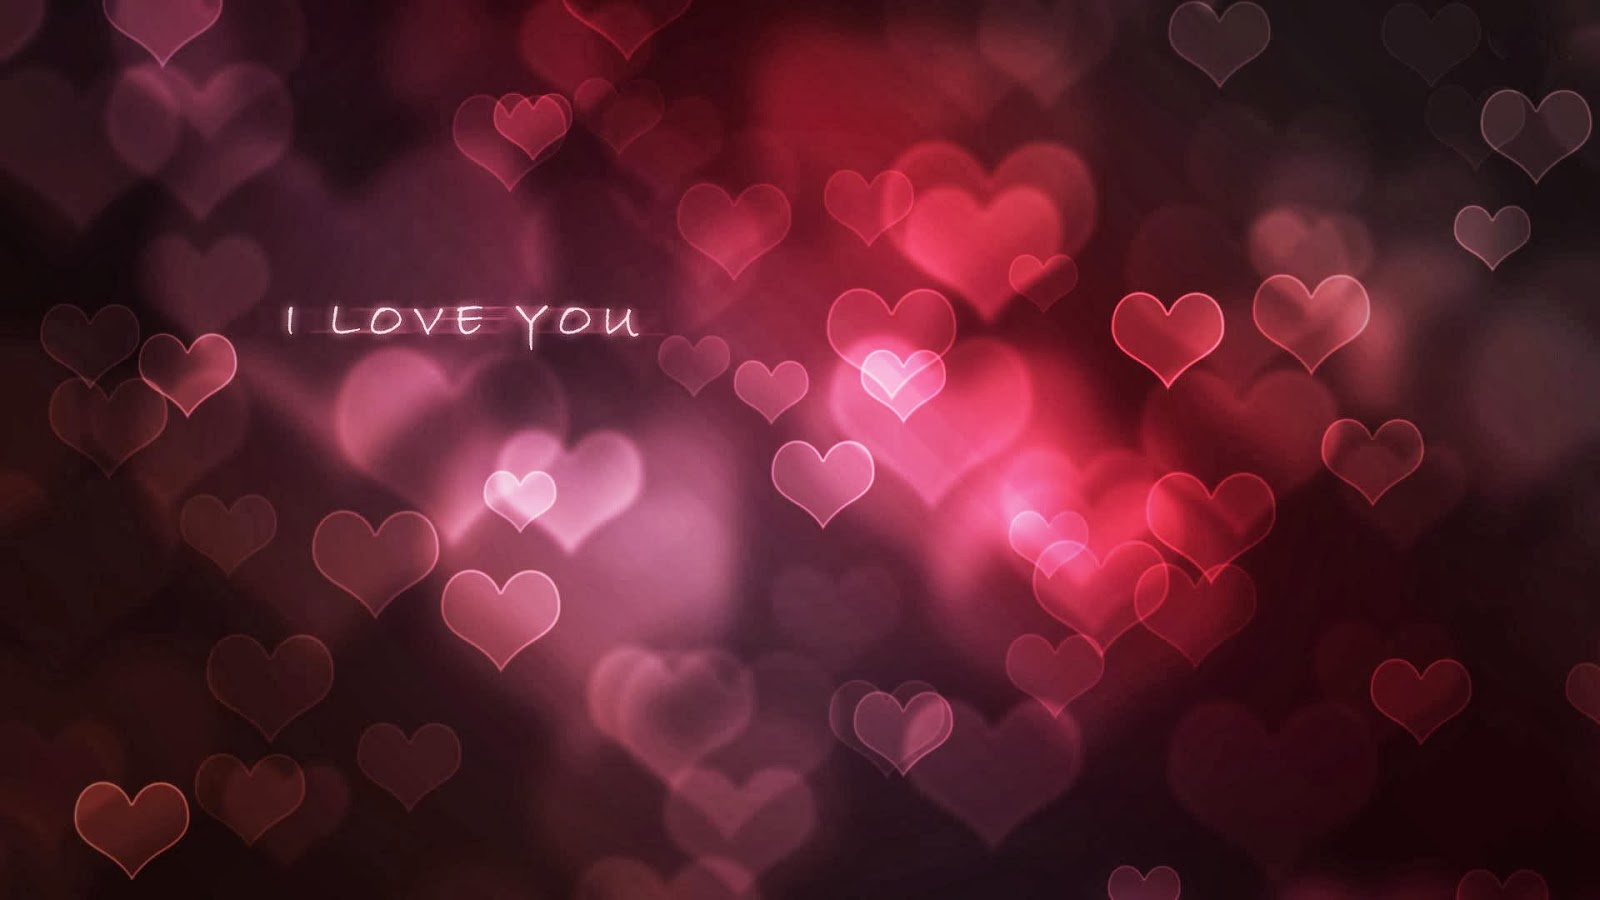 fondos de pantalla de amor con mensajes,corazón,rosado,rojo,texto,día de san valentín